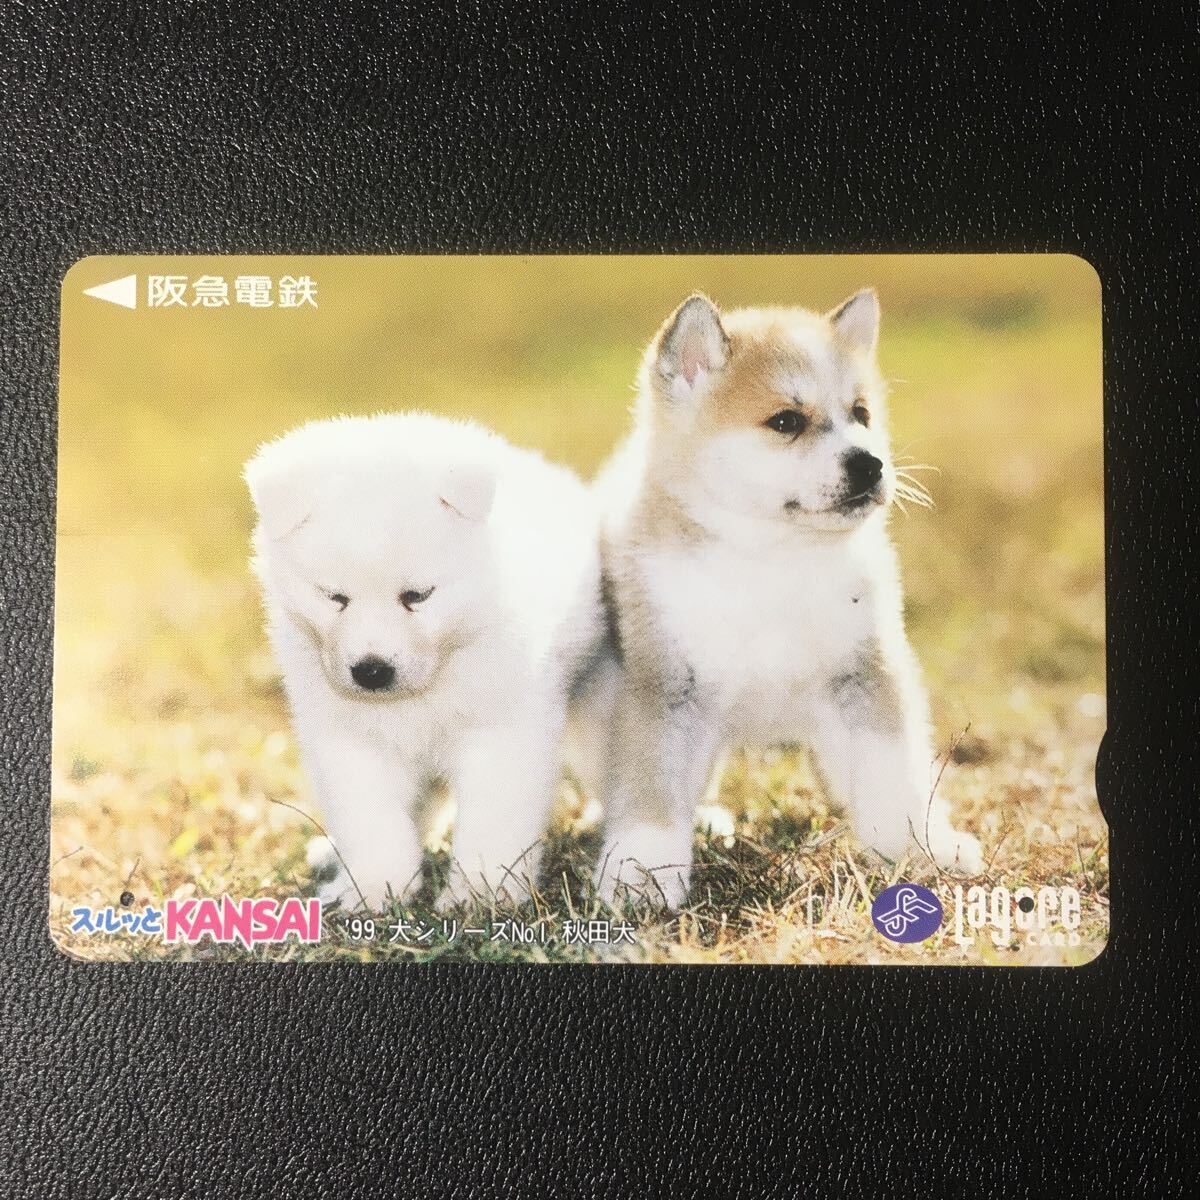 1999年1月1日発売柄ー犬シリーズ「秋田犬」ー阪急ラガールカード(使用済スルッとKANSAI)_画像1